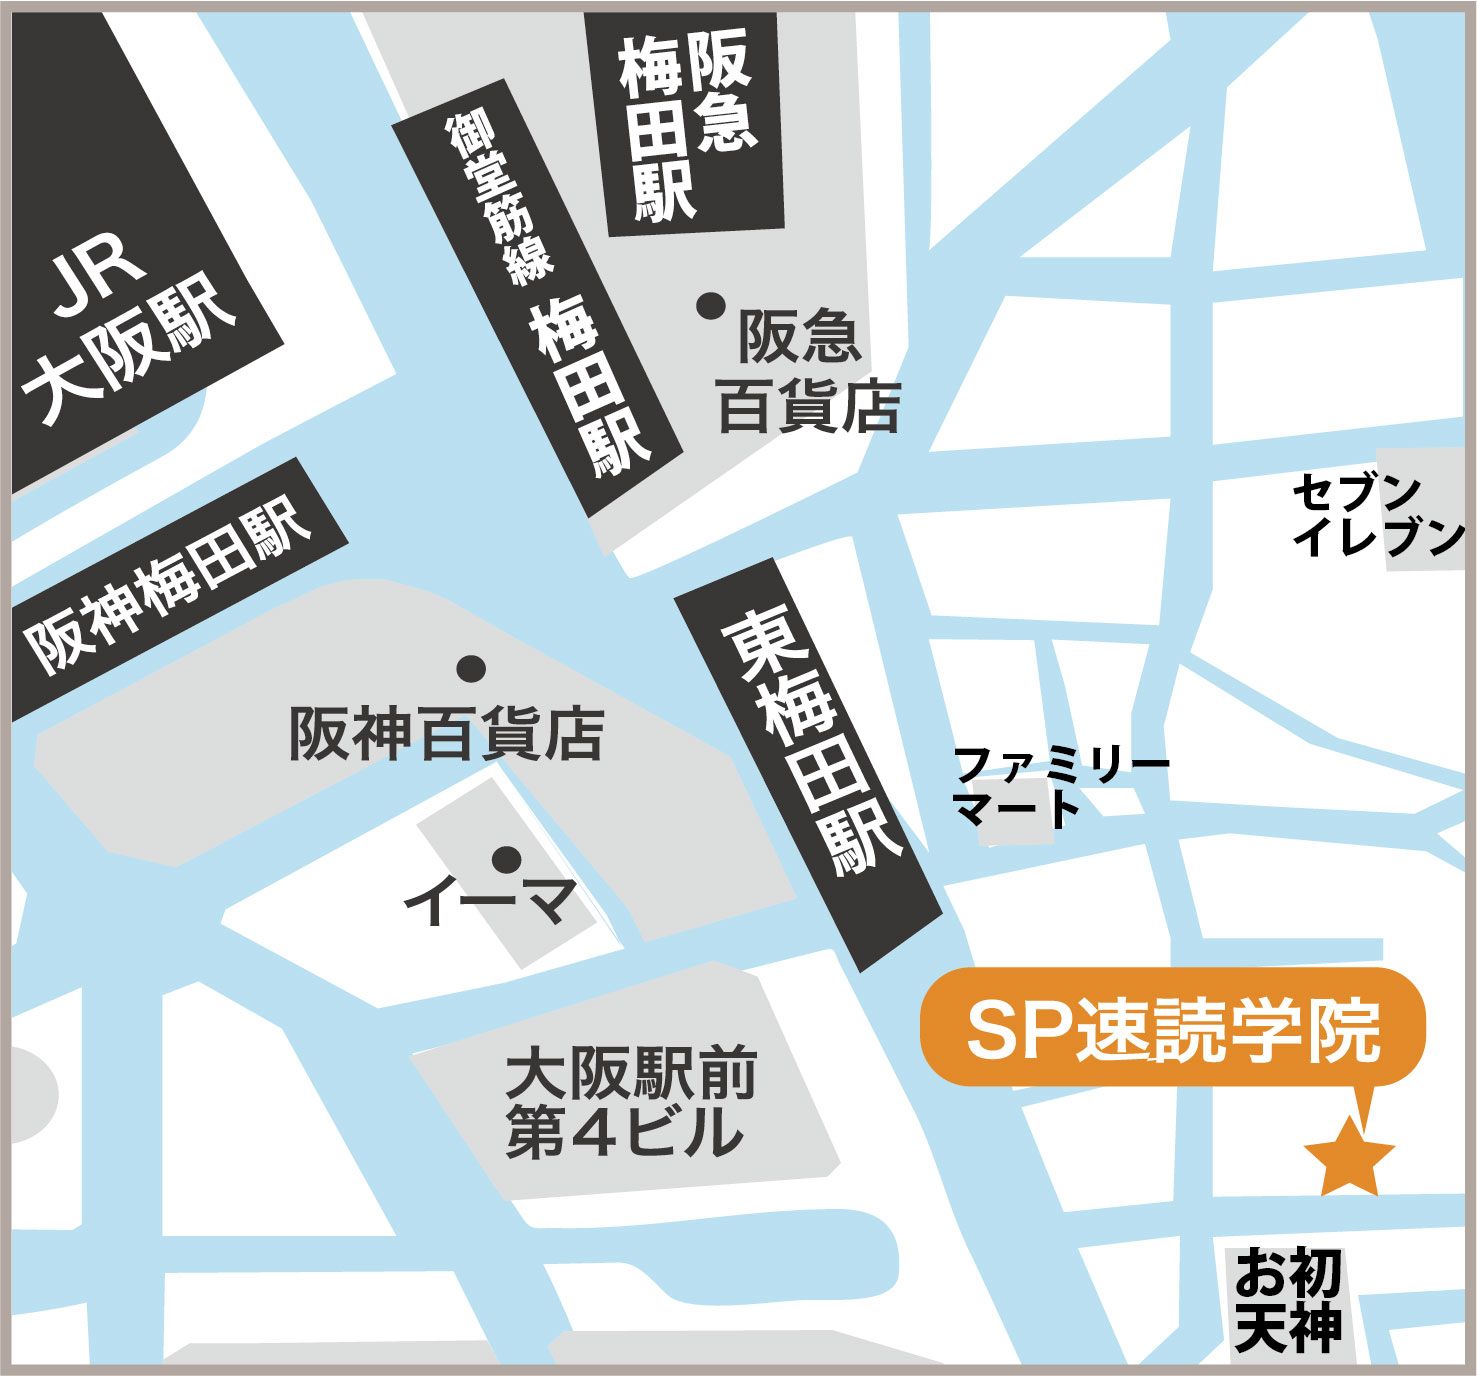 大阪教室地図